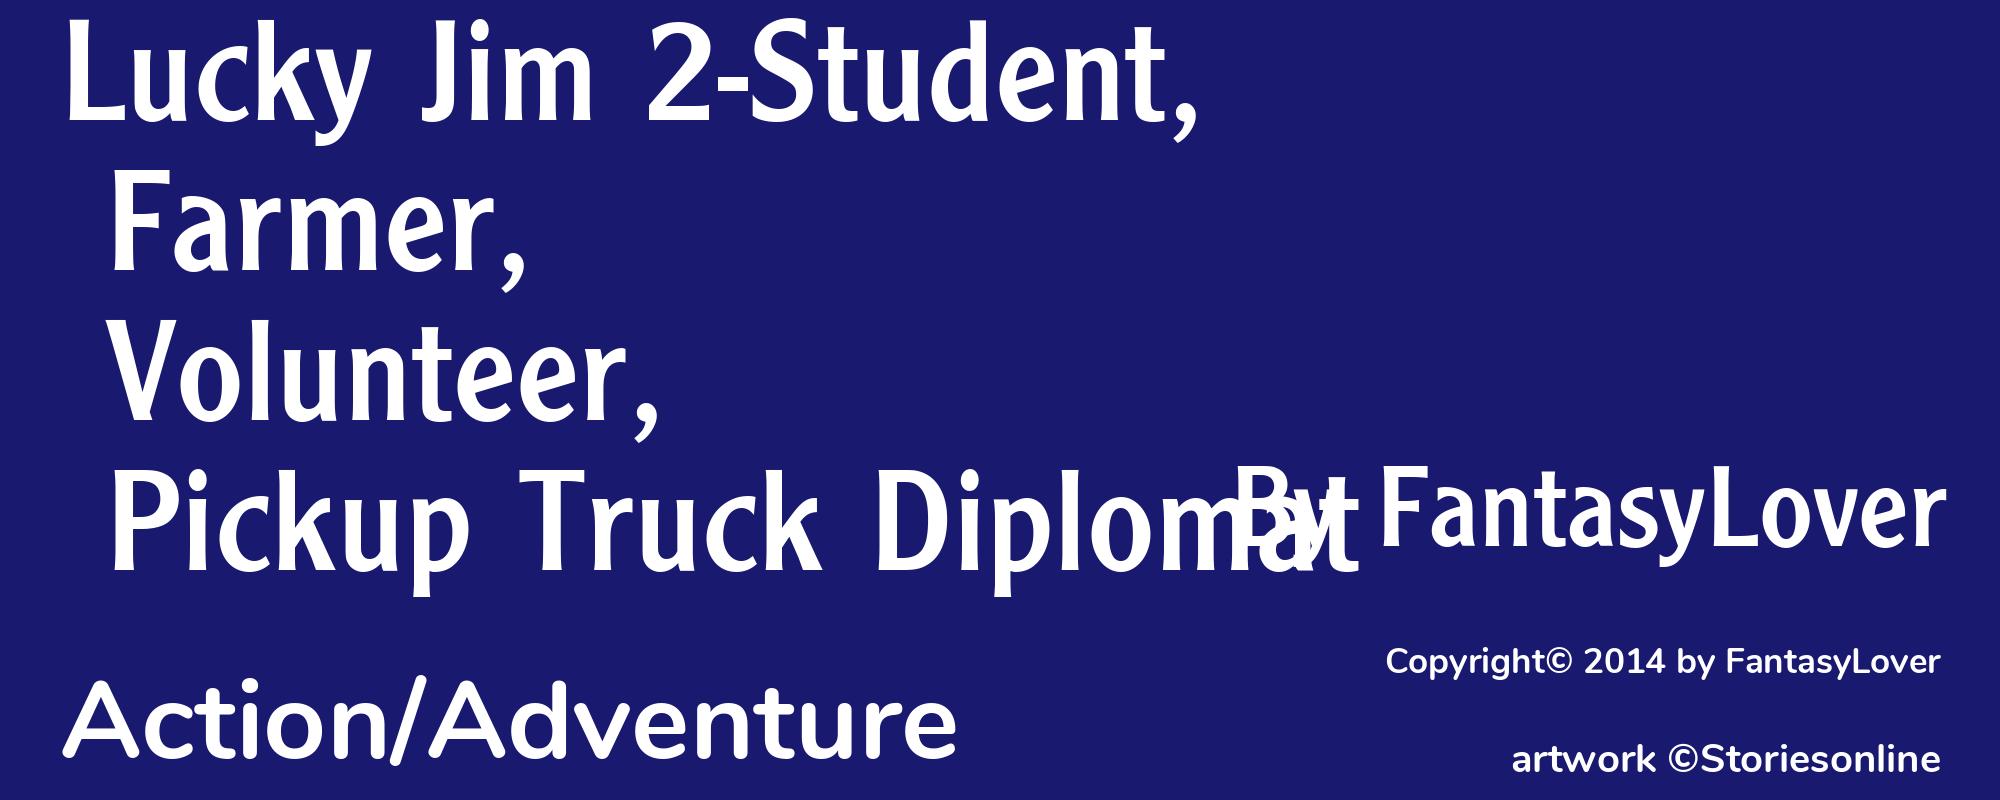 Lucky Jim 2-Student, Farmer, Volunteer, Pickup Truck Diplomat - Cover